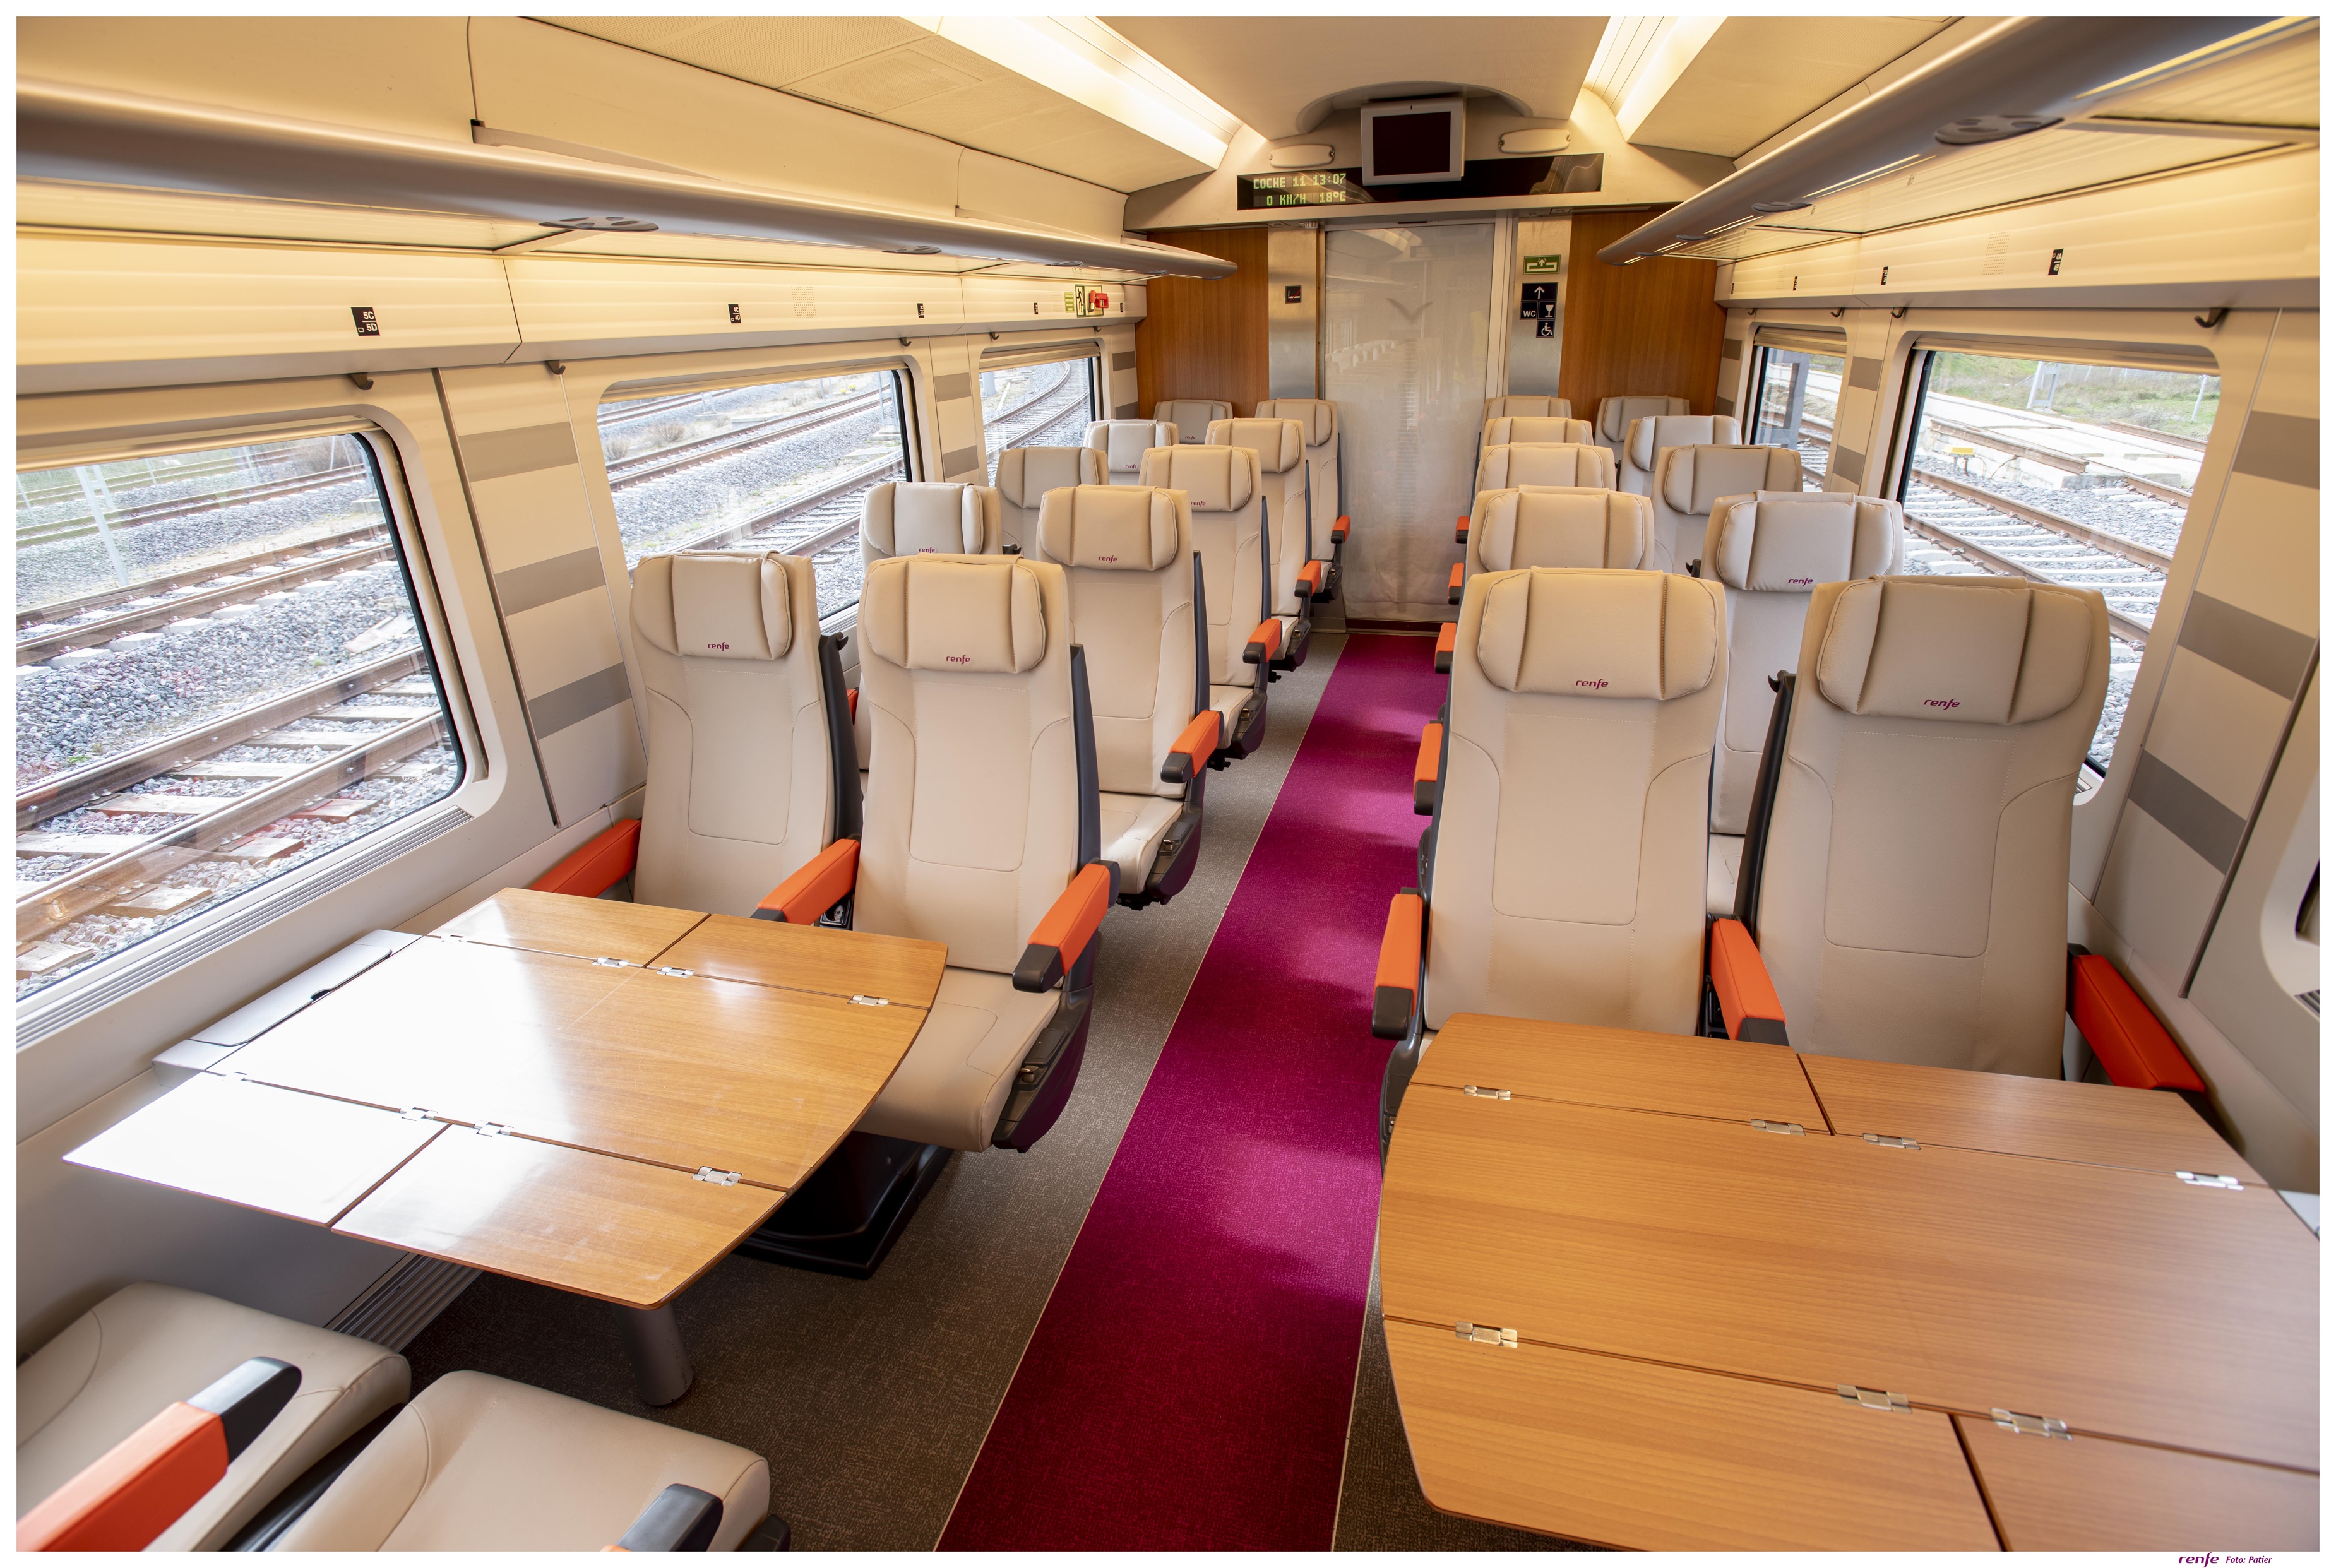 Renfe adjudica a Ferrovial el contrato de servicios a bordo durante cinco años por 272 millones de euros